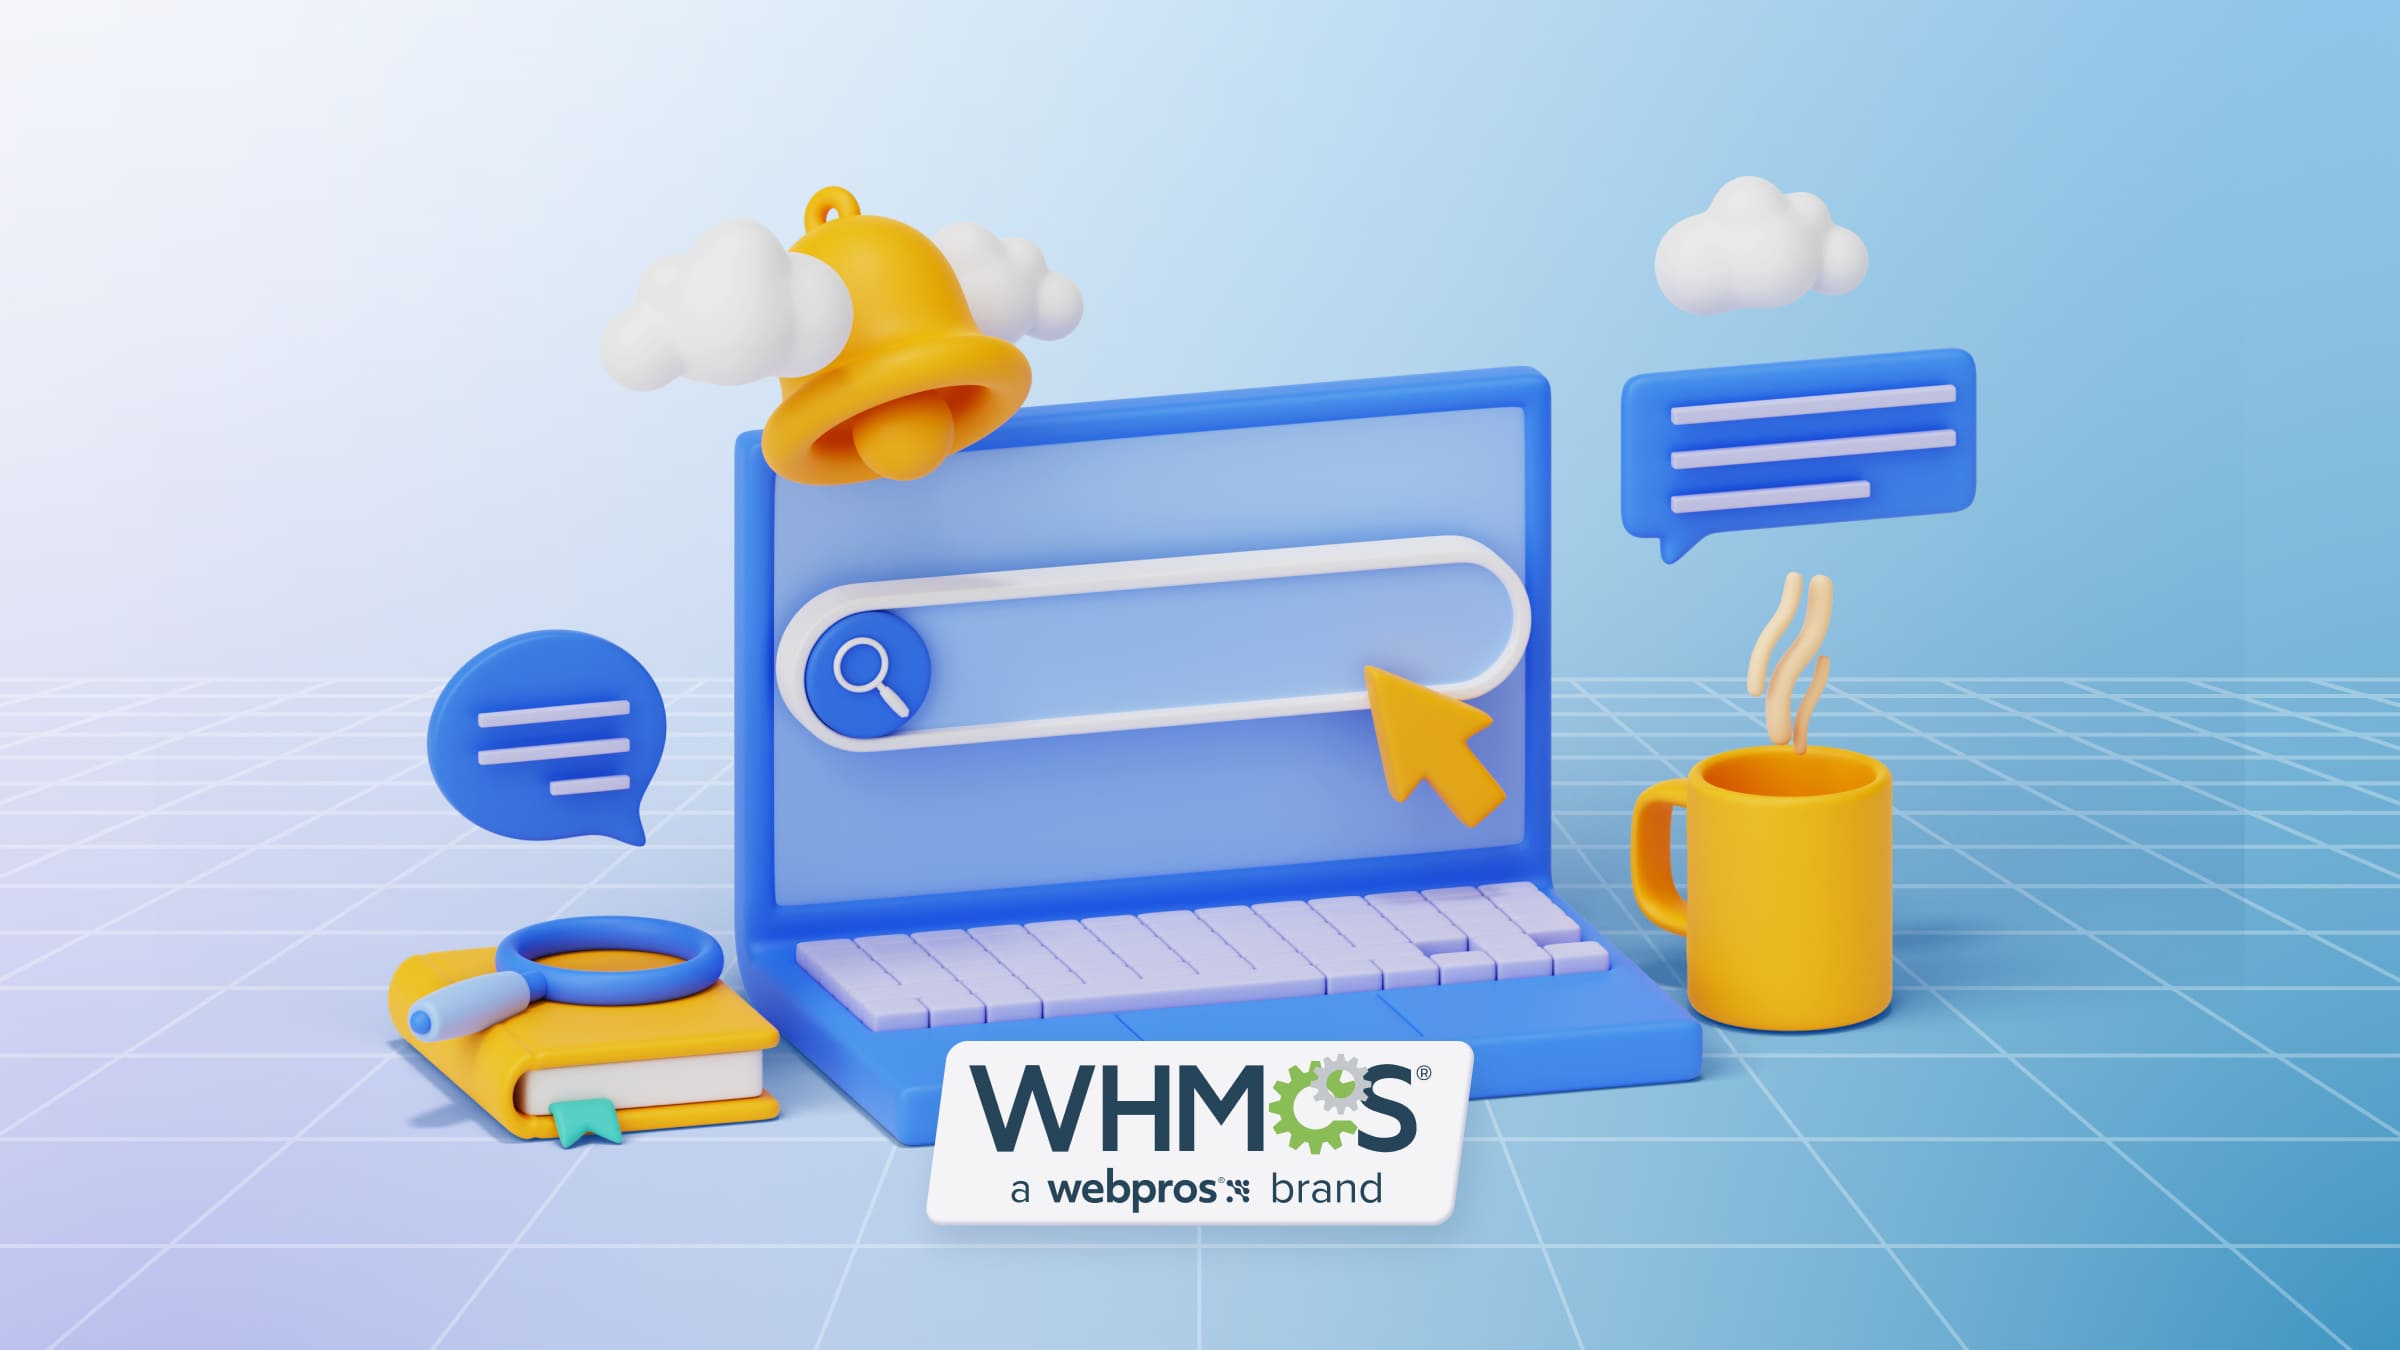 К преимуществам WHMCS относят высокую безопасность и наличие инструментов на учета.